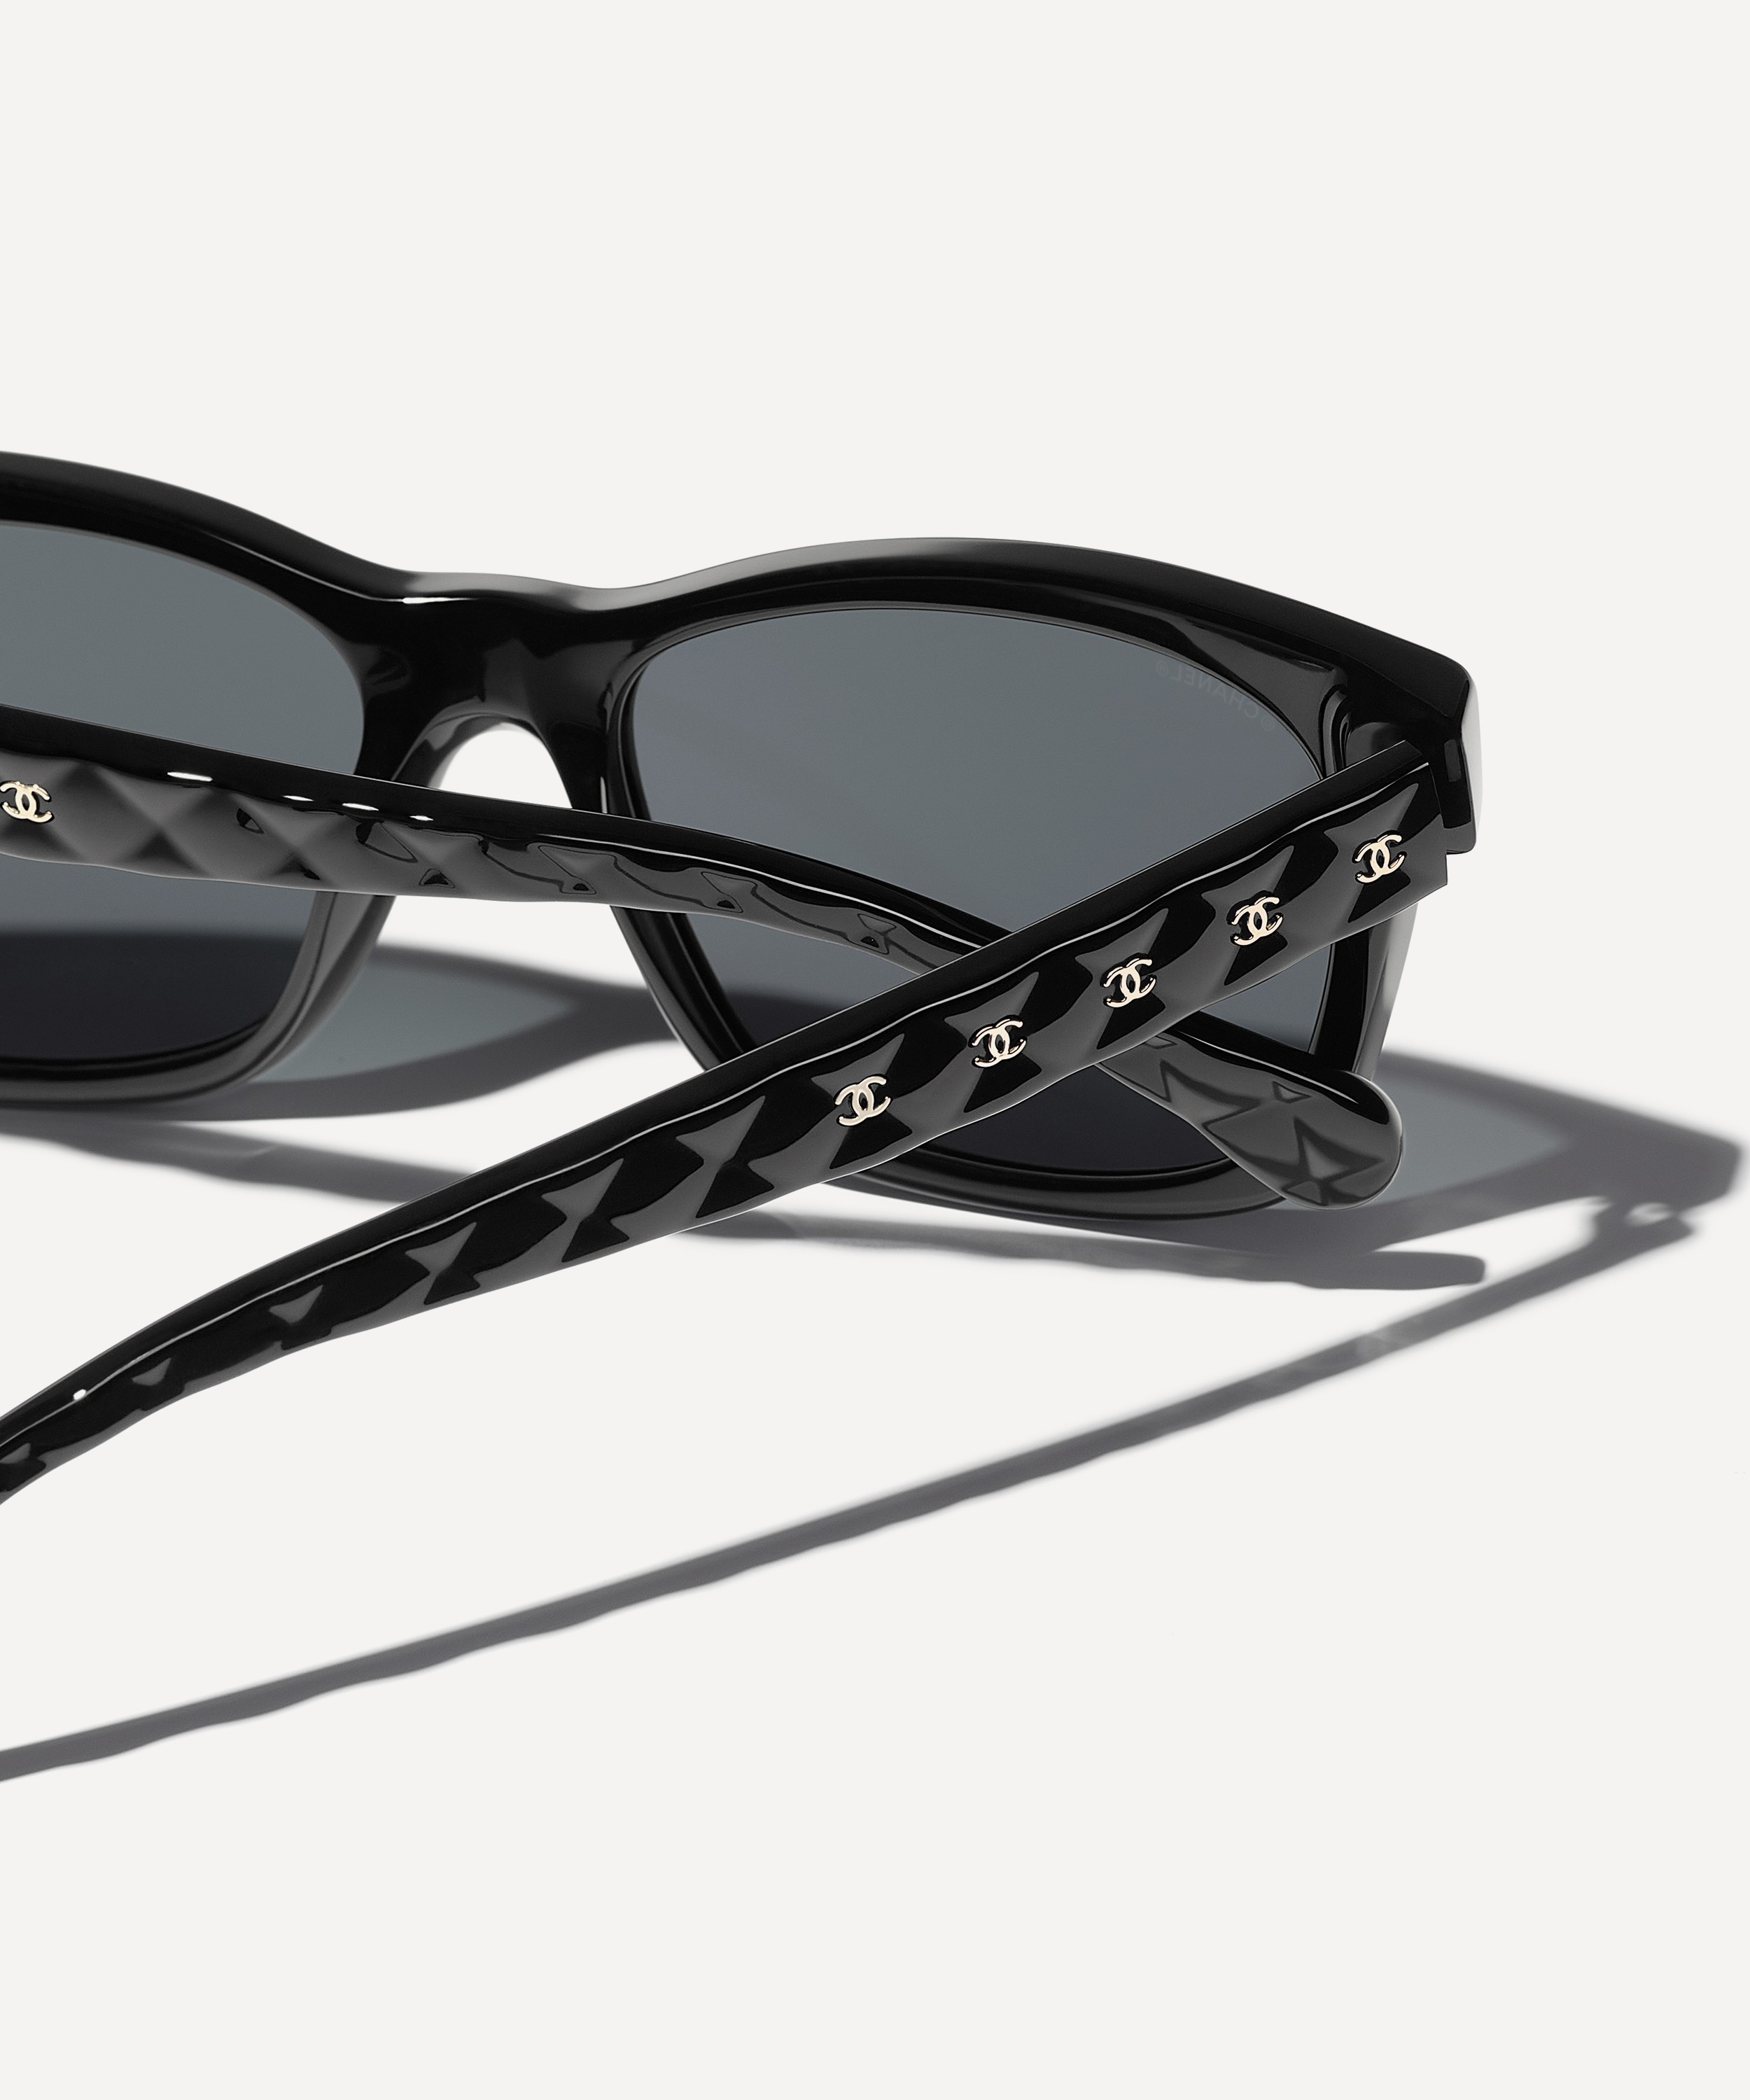 Chanel Square Sunglasses in Brown Acetate ref.590876 - Joli Closet